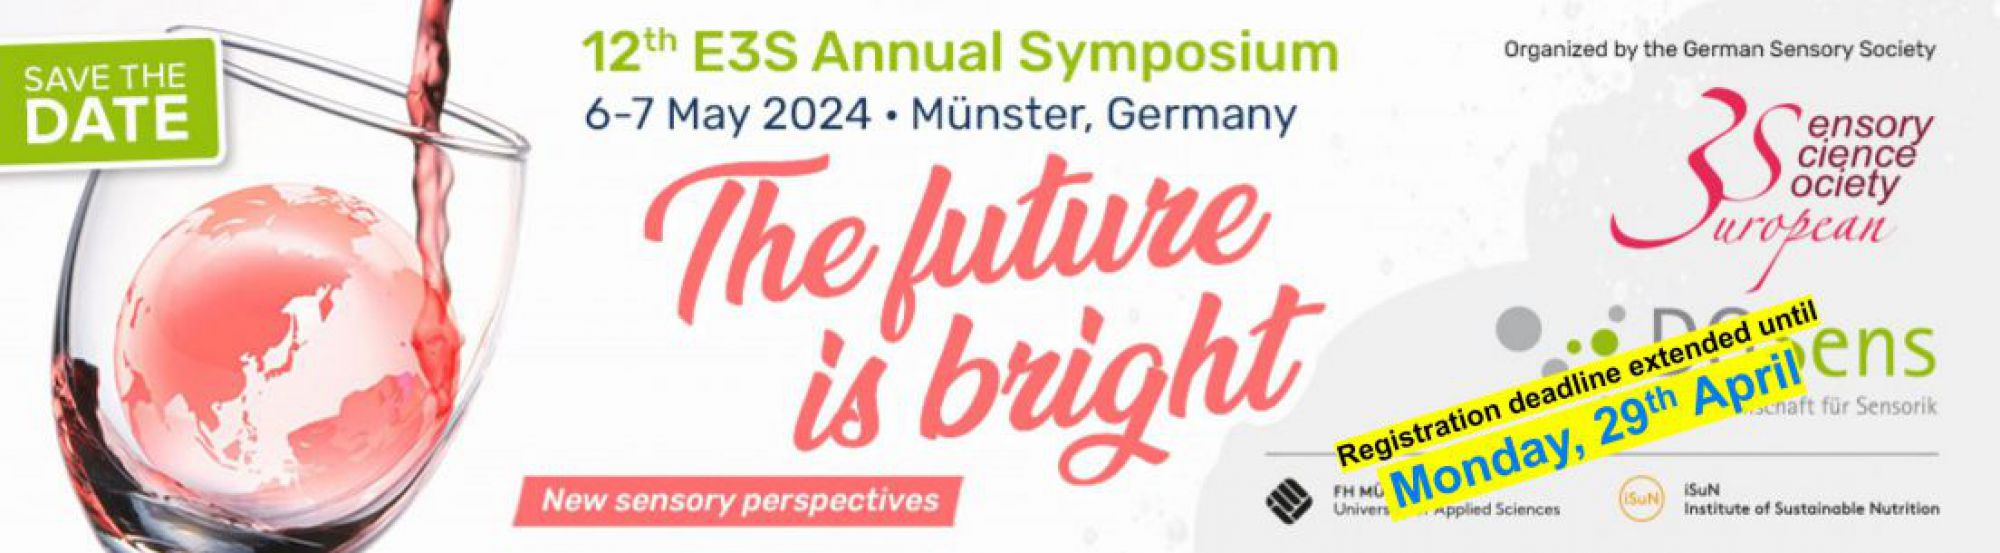 E3S Annual Symposium 2024